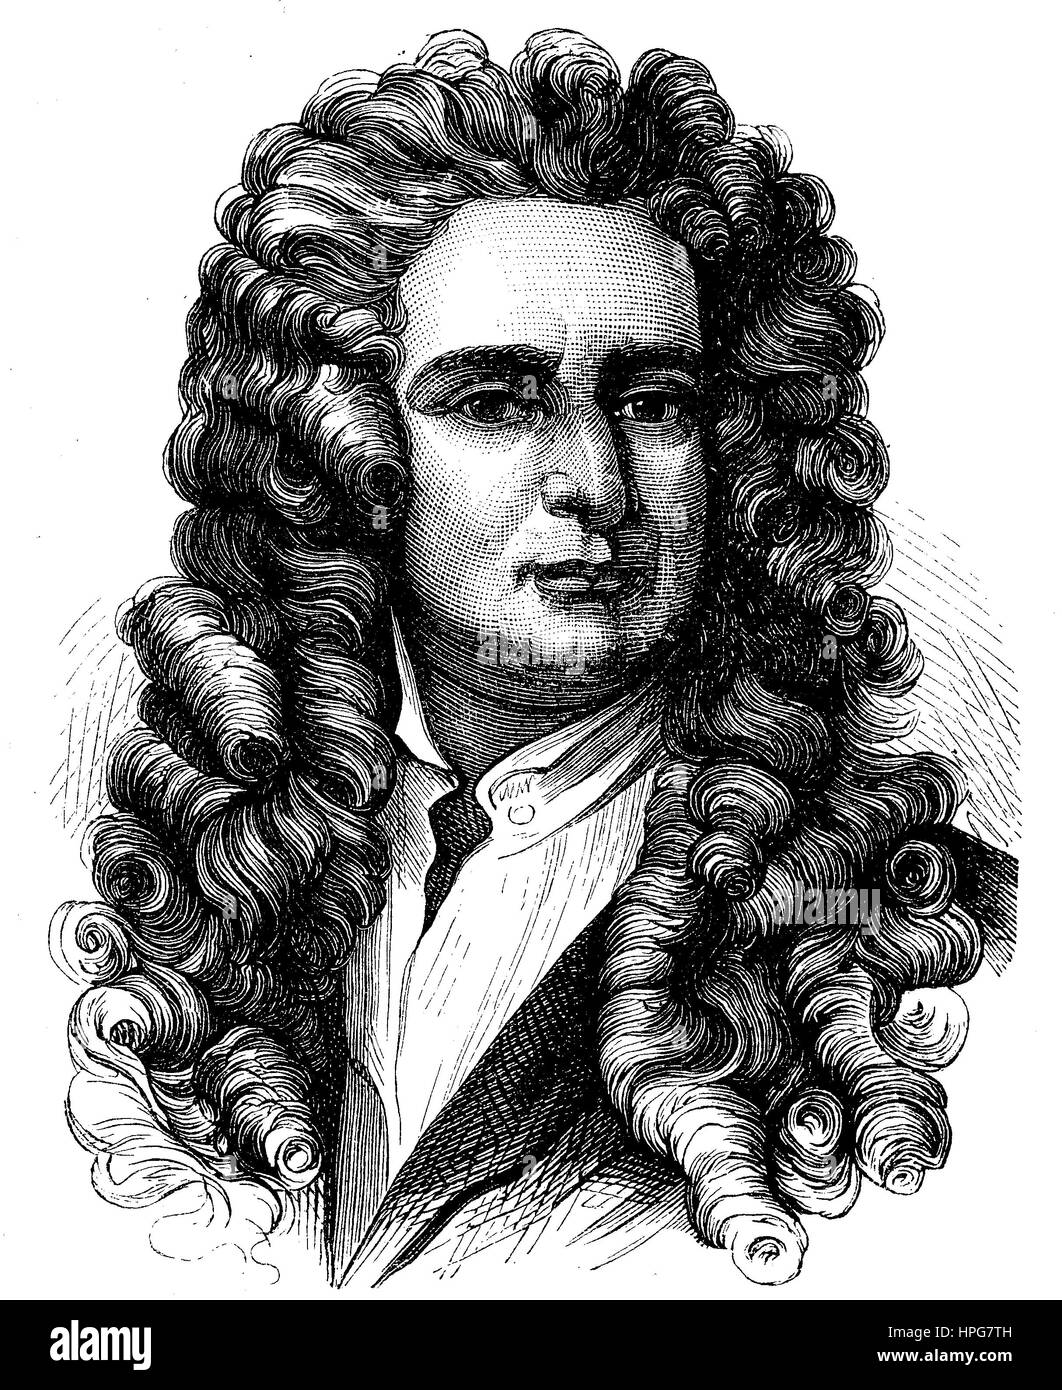 Sir Isaac Newton, war 1642-1726, ein englischer Mathematiker, Astronom und Physiker, natürlicher Philosoph, der weithin als einer der einflussreichsten Wissenschaftler aller Zeiten und eine Schlüsselfigur in der wissenschaftlichen Revolution, digital verbesserte Wiedergabe von einem Holzschnitt aus dem Jahr 1885 anerkannt ist Stockfoto